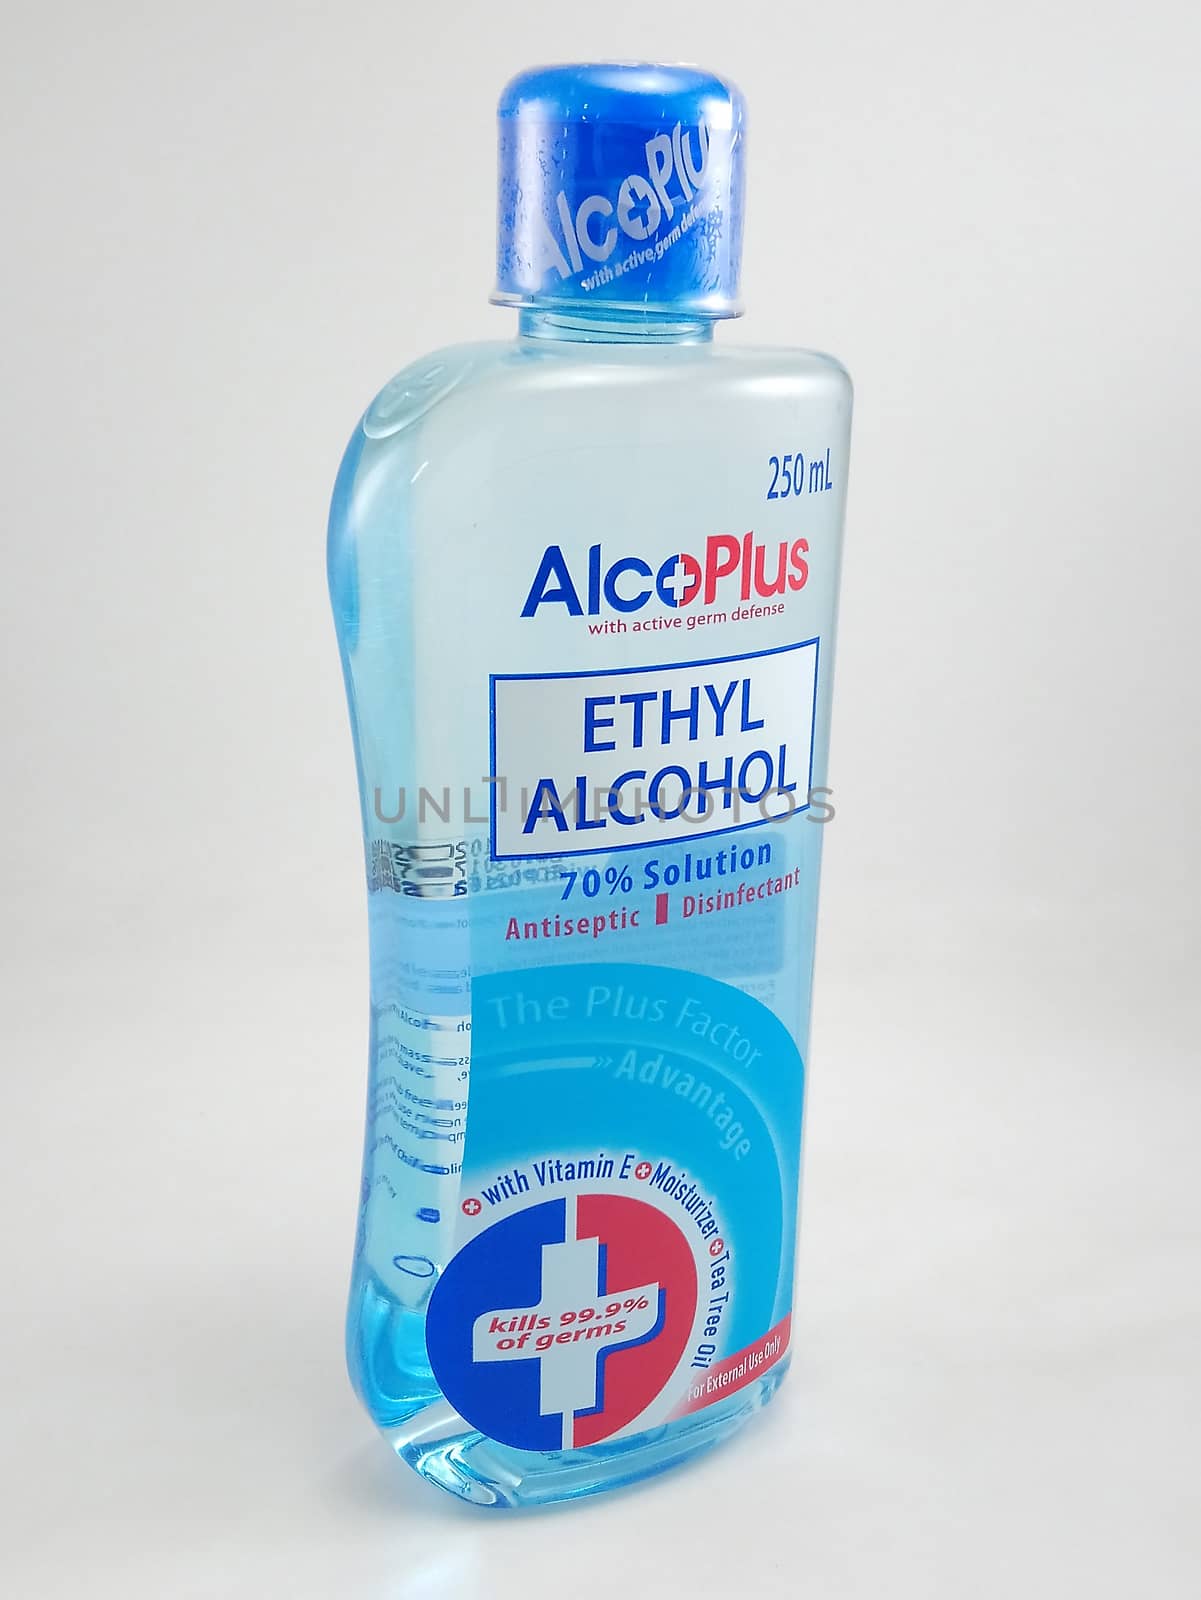 MANILA, PH - SEPT 22 - Alcoplus ethyl alcohol bottle on September 22, 2020 in Manila, Philippines.